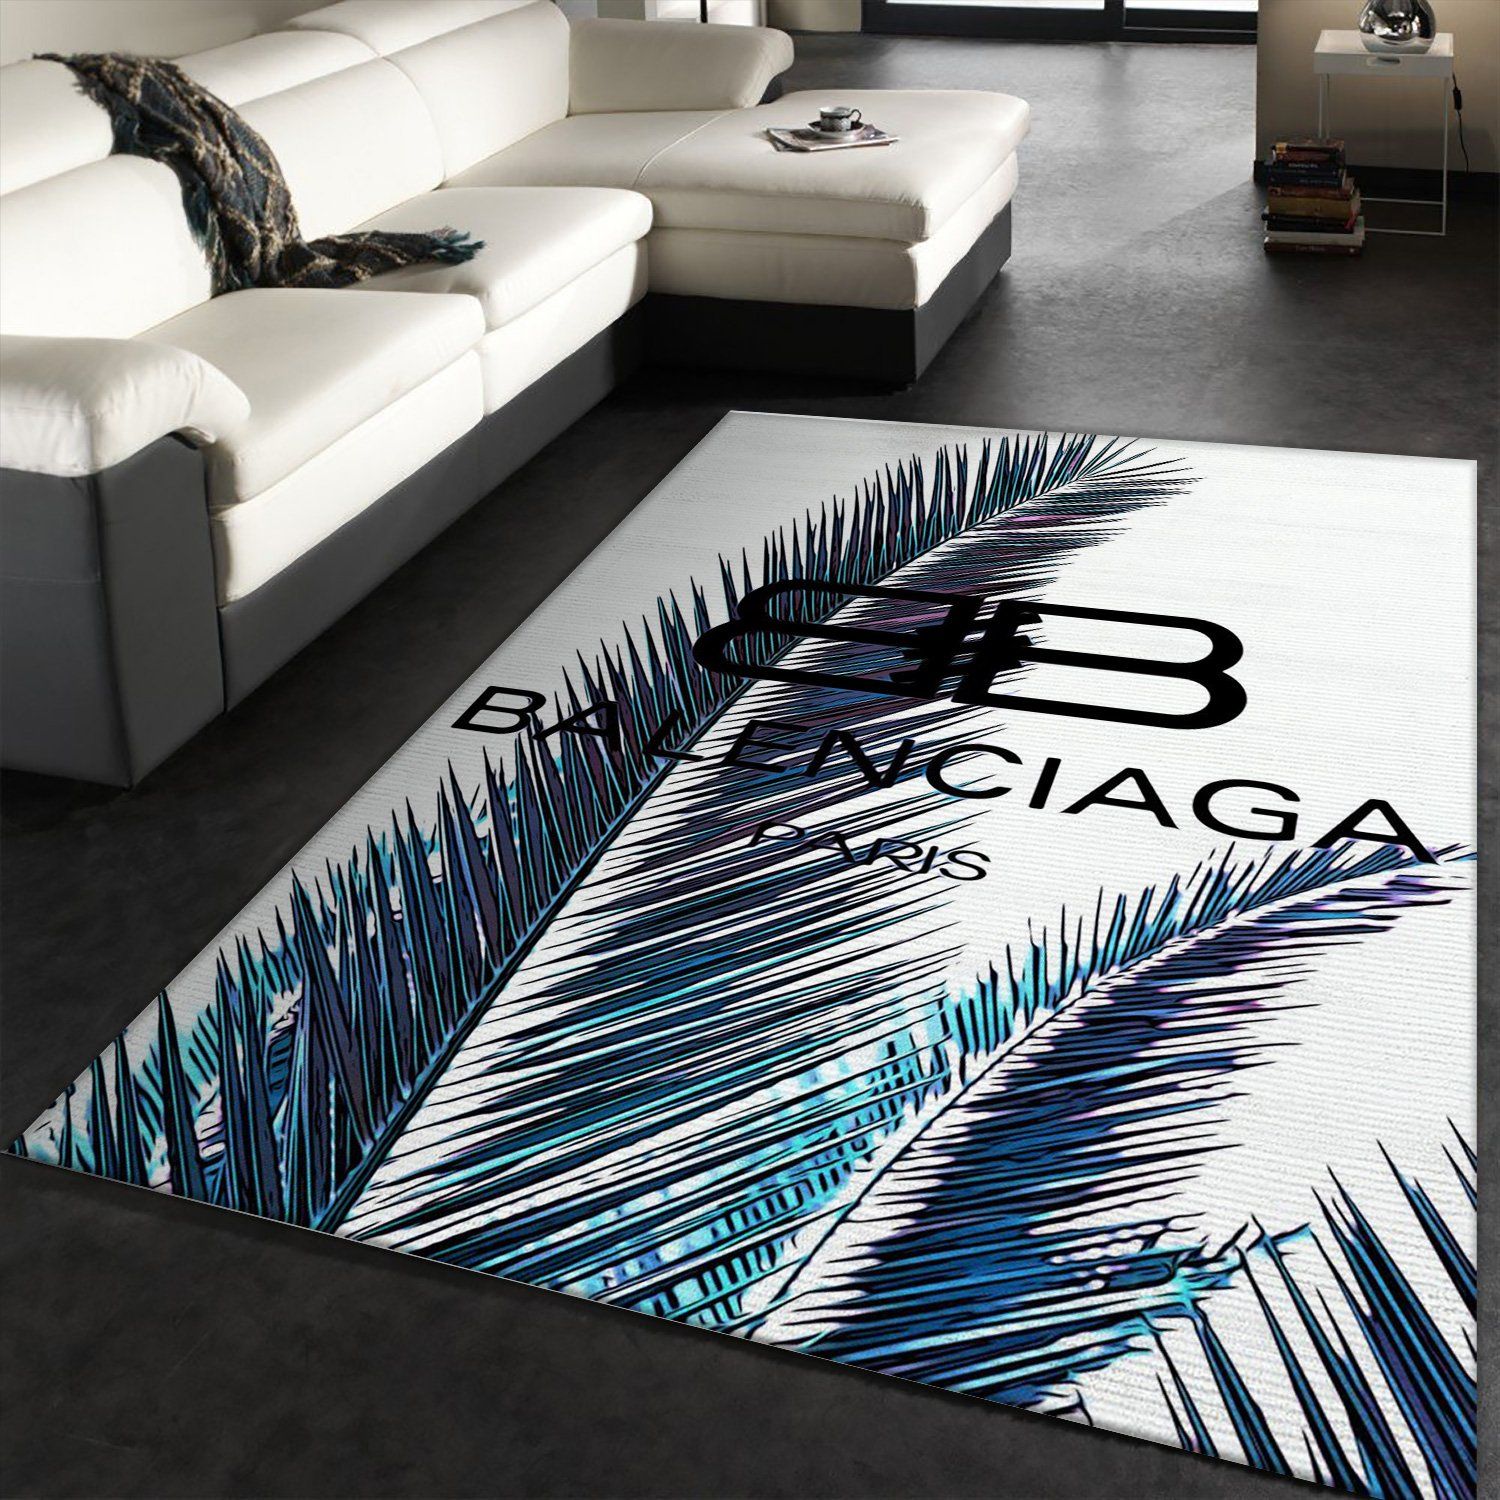 Balenciaga Rectangle Rug Fashion Brand Area Carpet Luxury Door Mat Home Decor